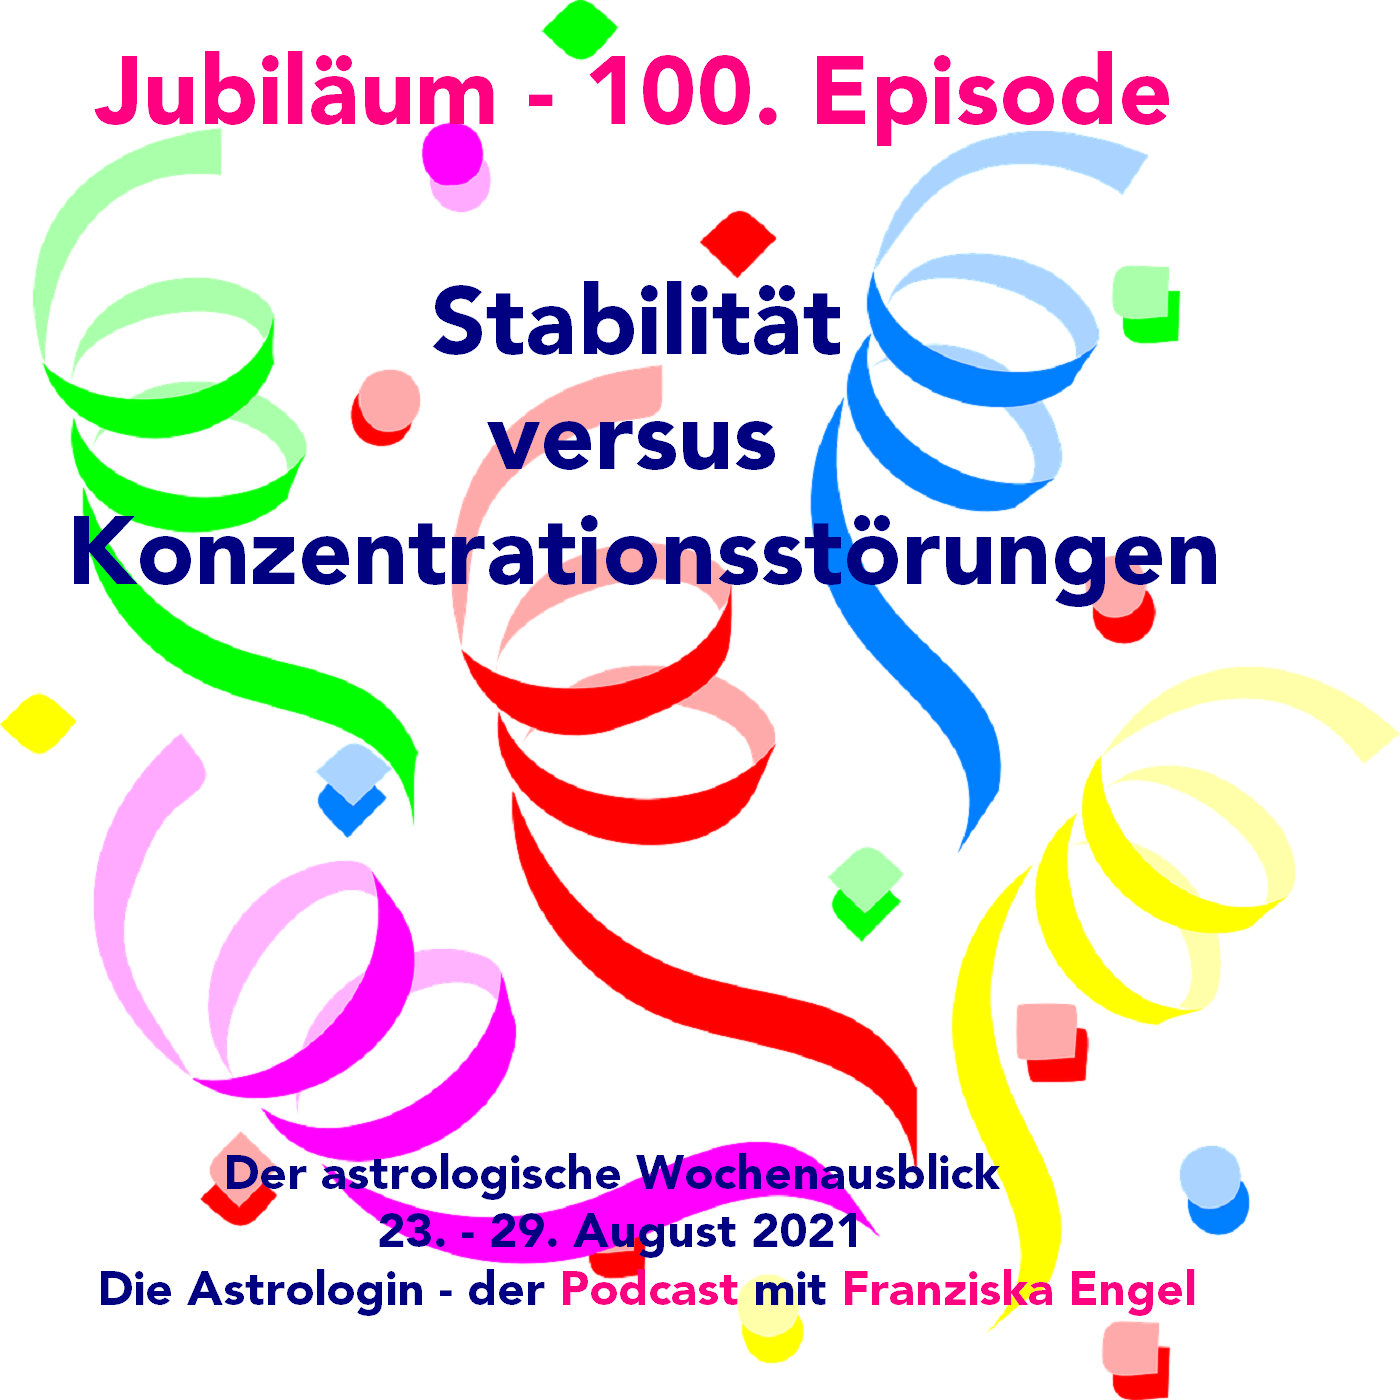 Jubiläum - 100. Episode - Stabilität versus Konzentrationsstörungen